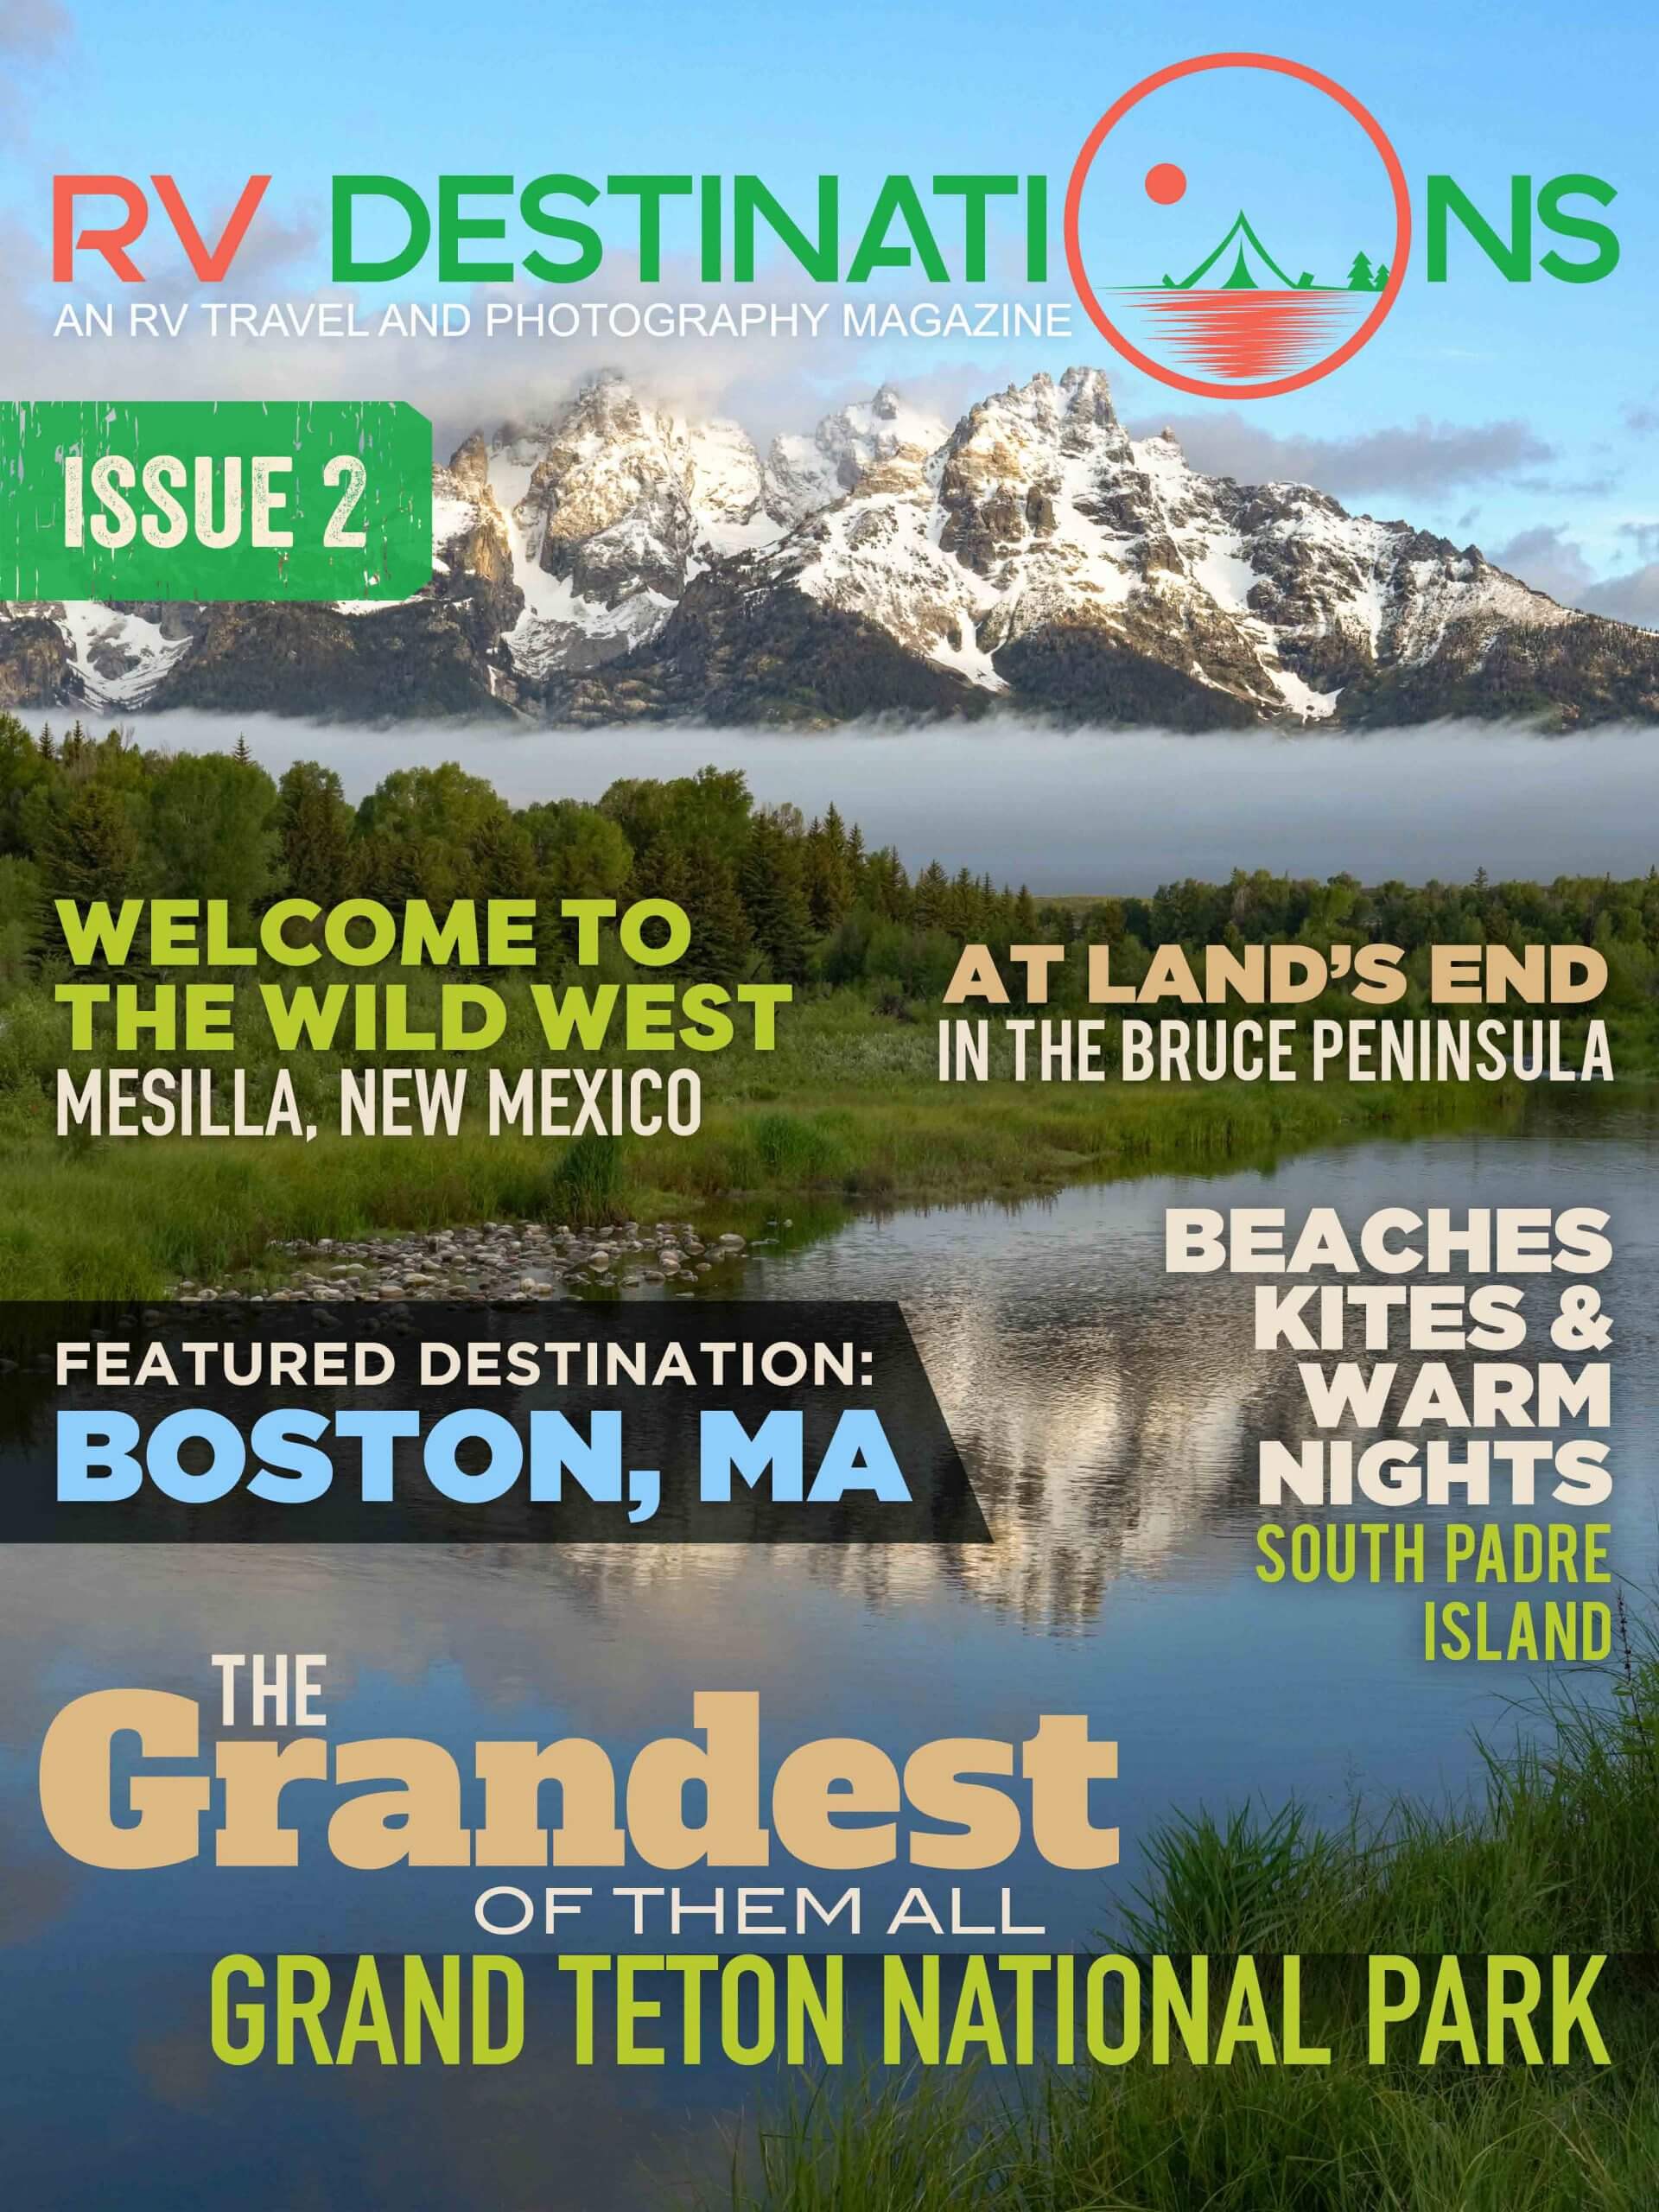 RV Destinations Magazine cover, mountains and scenic landscape.